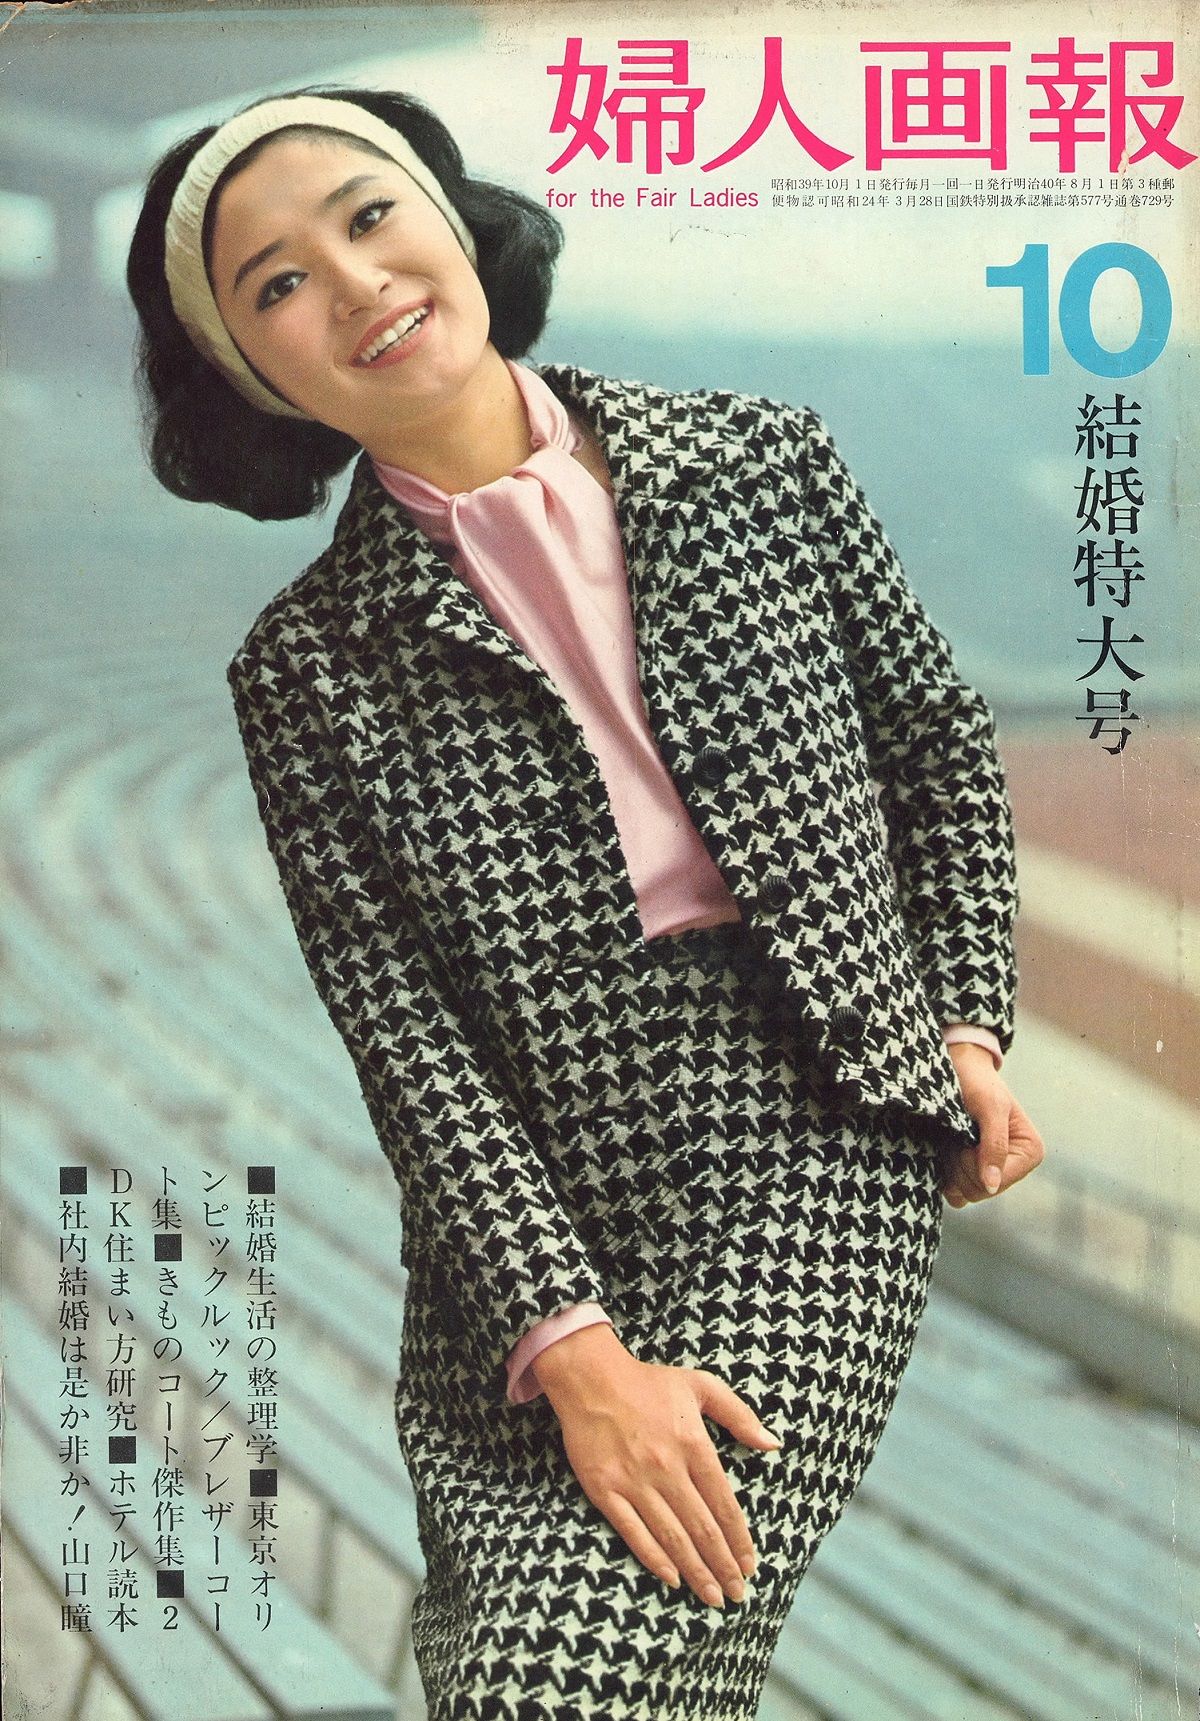 開幕直前の『婦人画報』1964年10月号が伝えた、東京五輪の様子とは……。